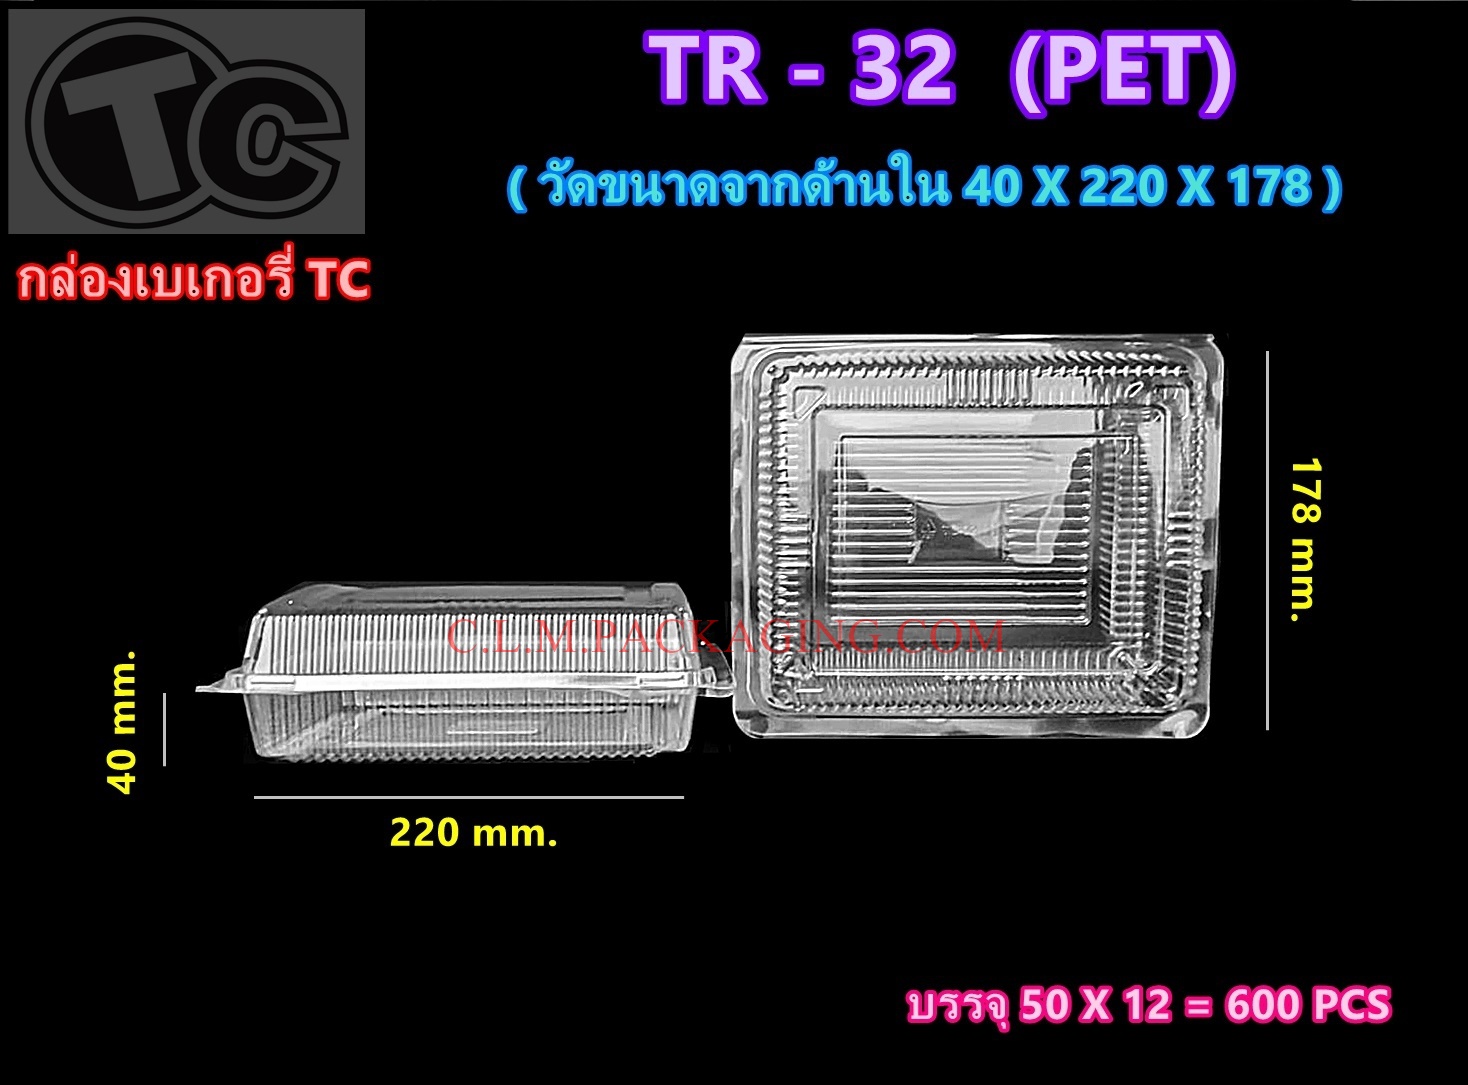 กล่องใส TR - 32 เนื้อ PET